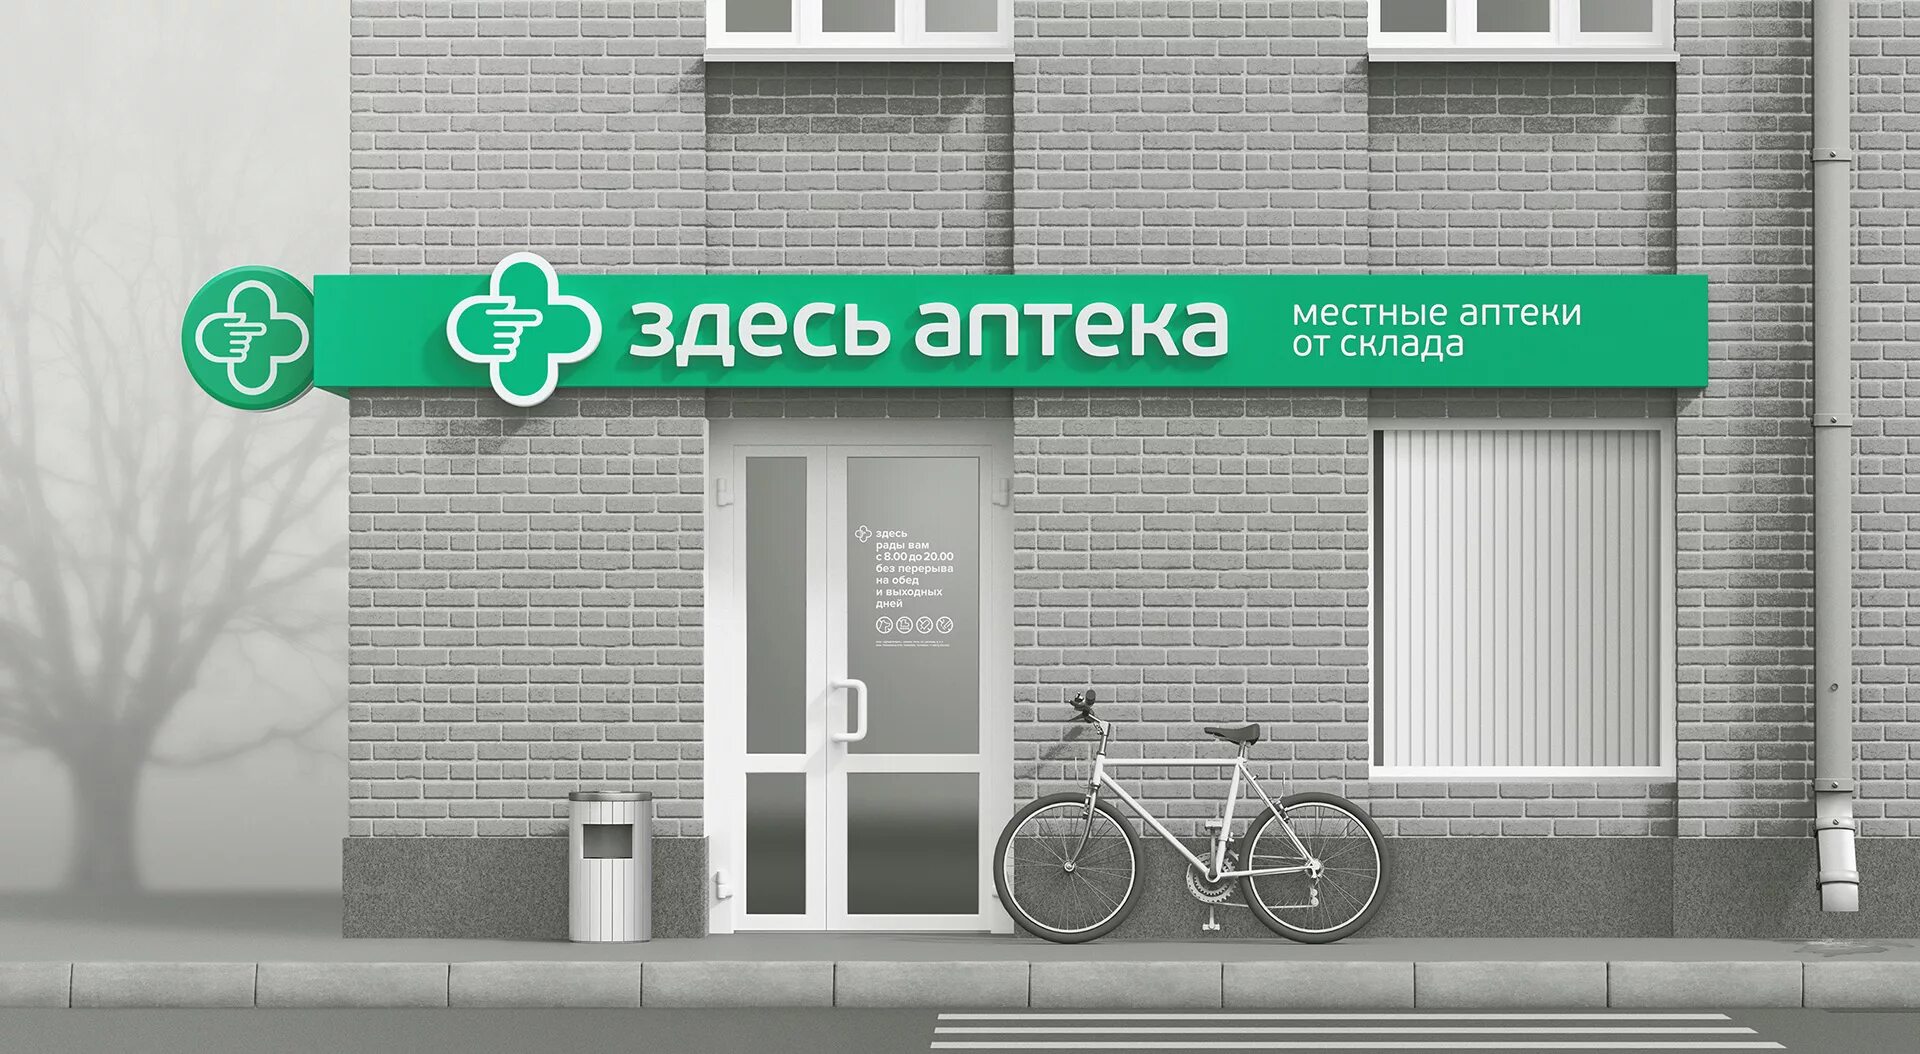 Новомосковск аптека заказать лекарство. Здесь аптека. Здесь аптека вывеска. Аптека баннер. Брендинг аптеки.